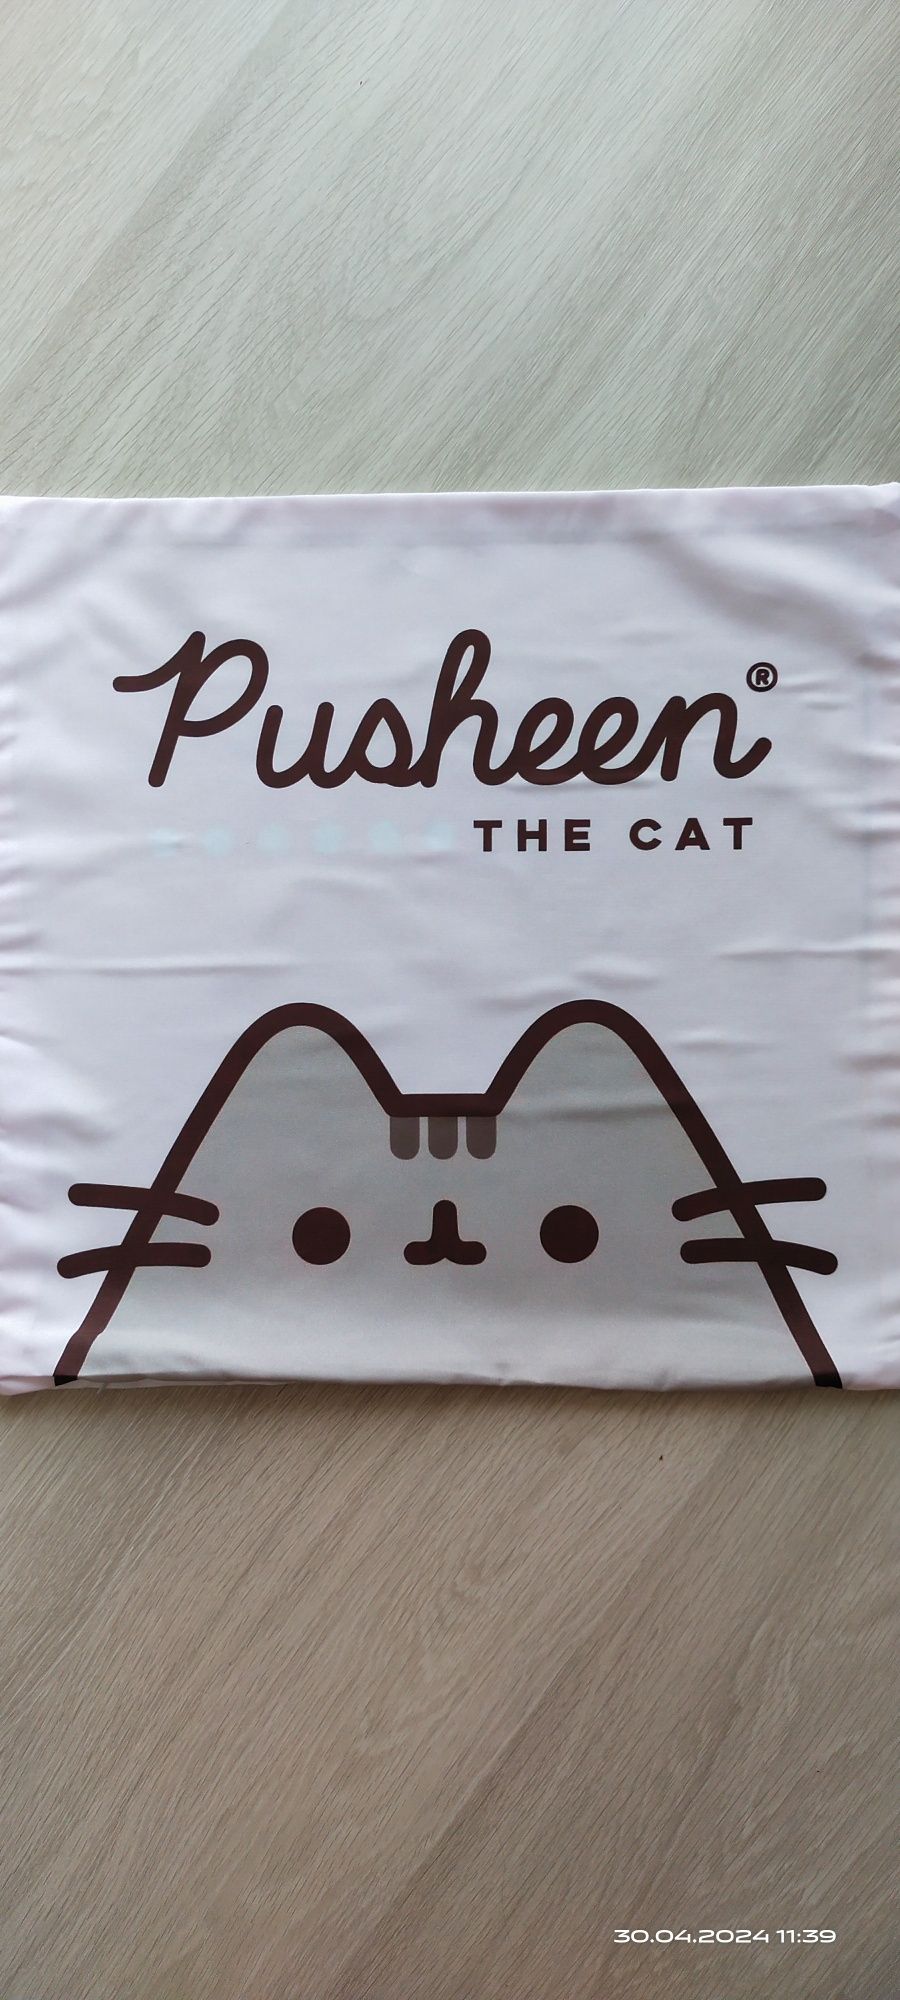 Poszewka na poduszkę kot Pusheen